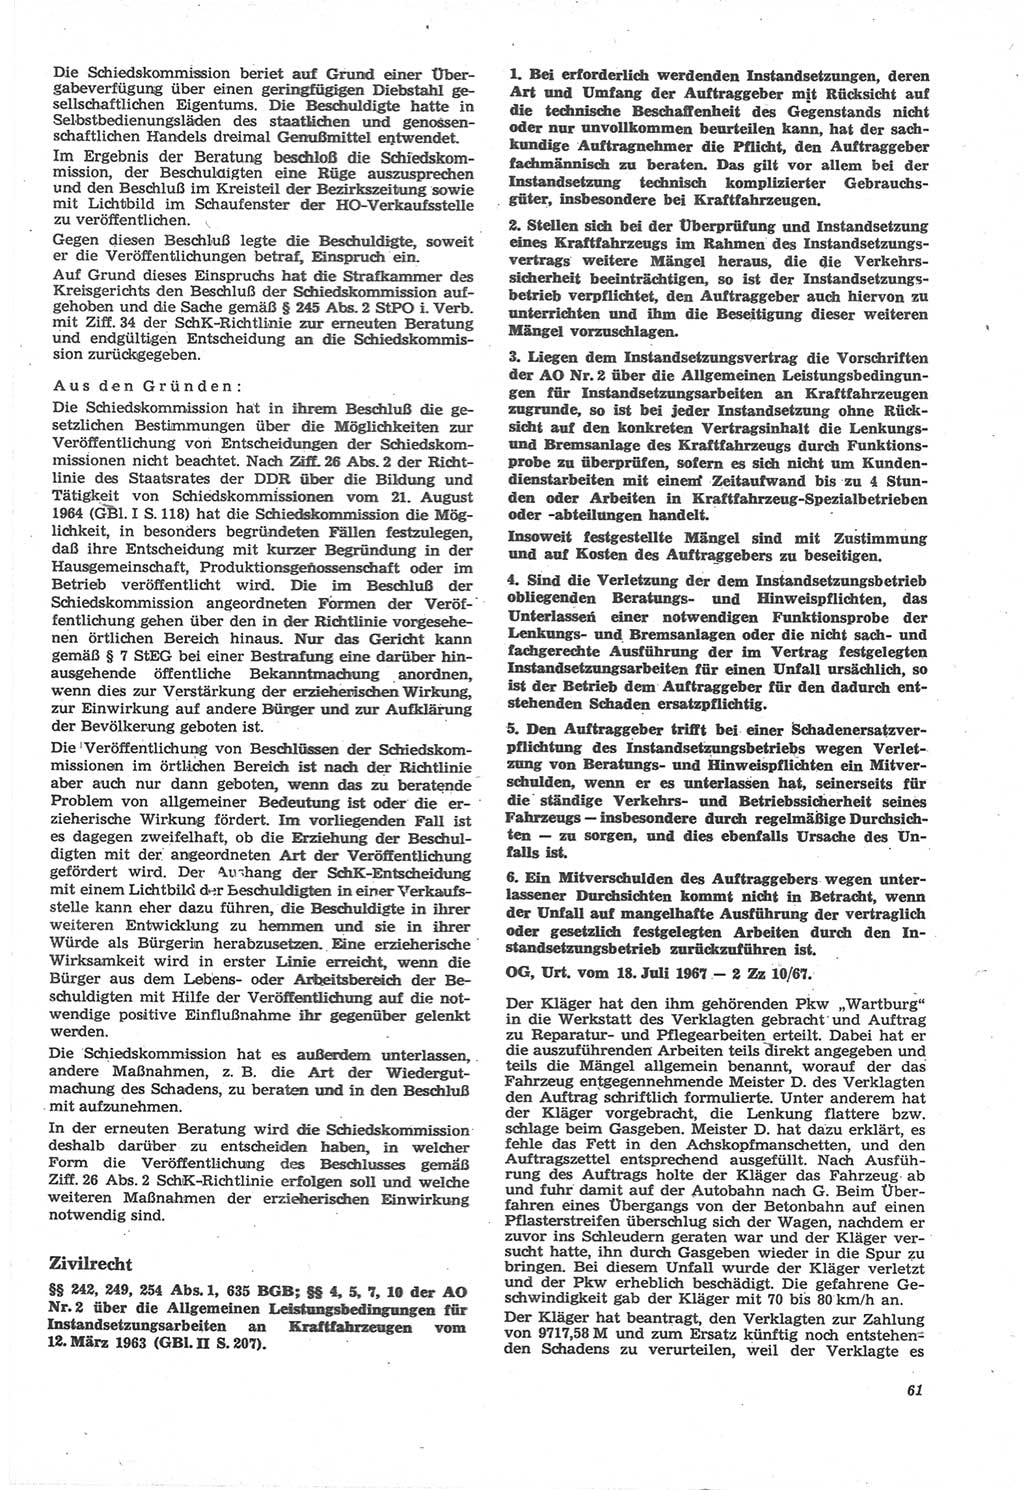 Neue Justiz (NJ), Zeitschrift für Recht und Rechtswissenschaft [Deutsche Demokratische Republik (DDR)], 22. Jahrgang 1968, Seite 61 (NJ DDR 1968, S. 61)